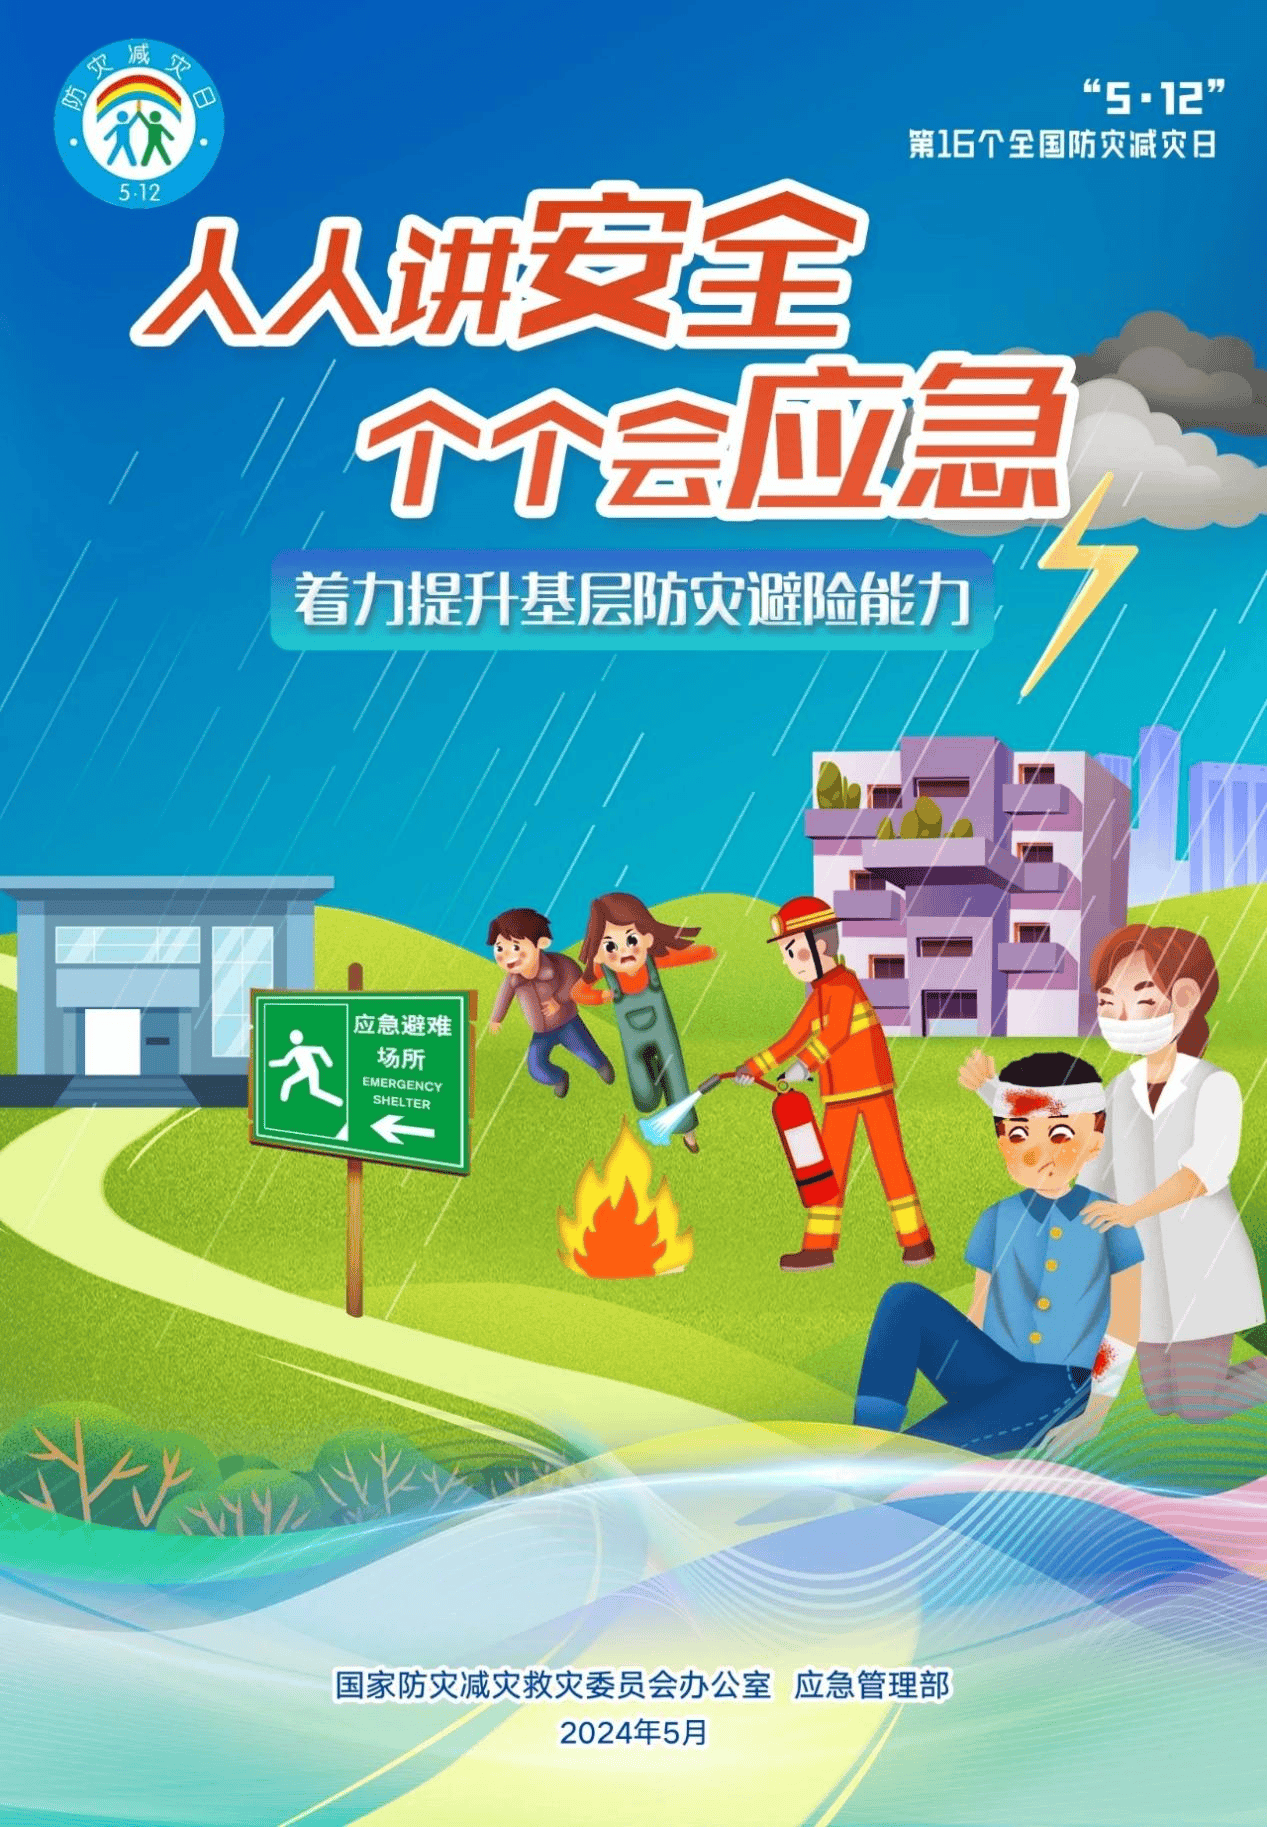 中国人寿天津市分公司公益宣传:全国防灾减灾日人人讲安全,个个会